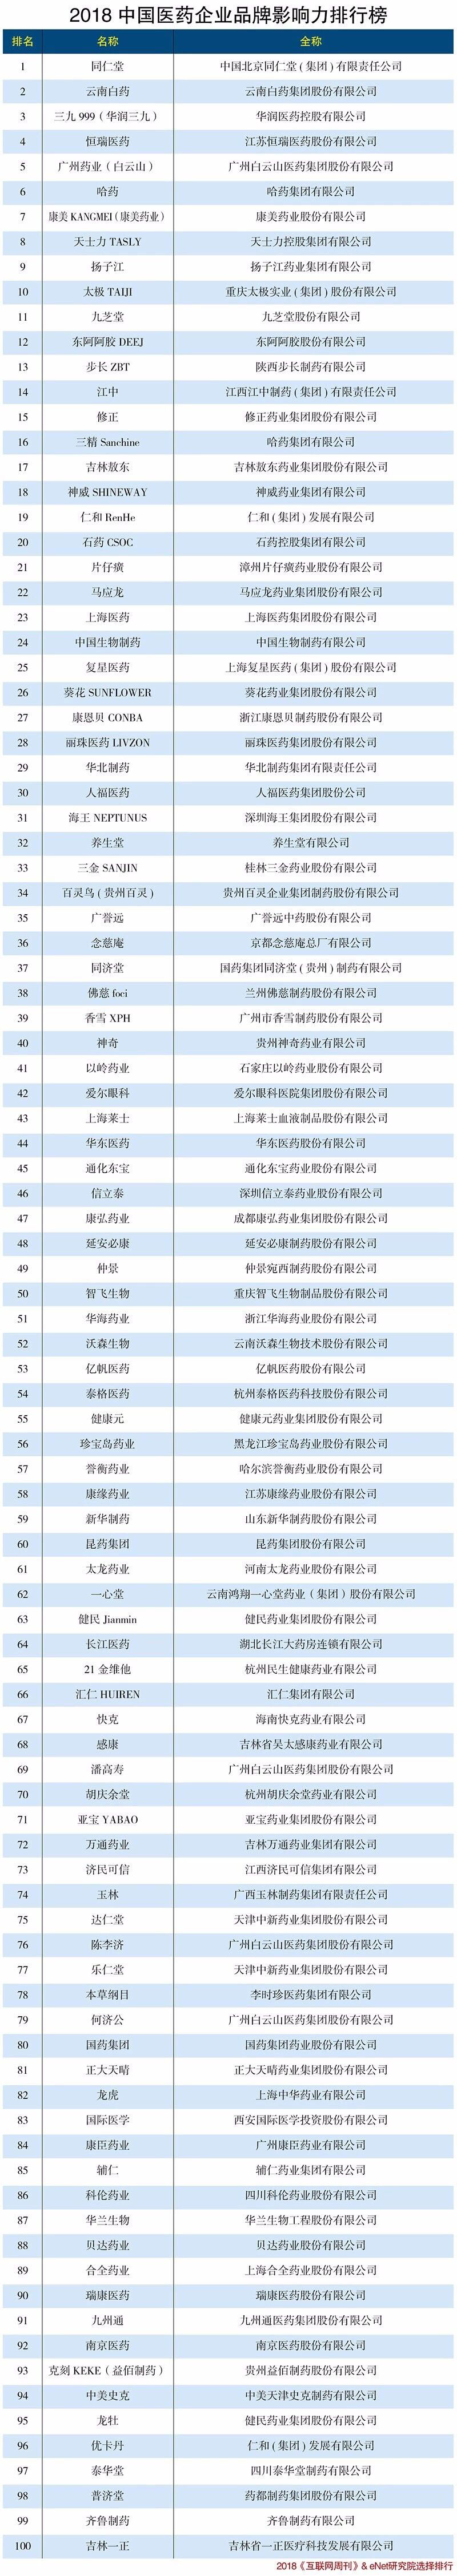 2018中国医药企业品牌影响力排行榜xiao.jpg